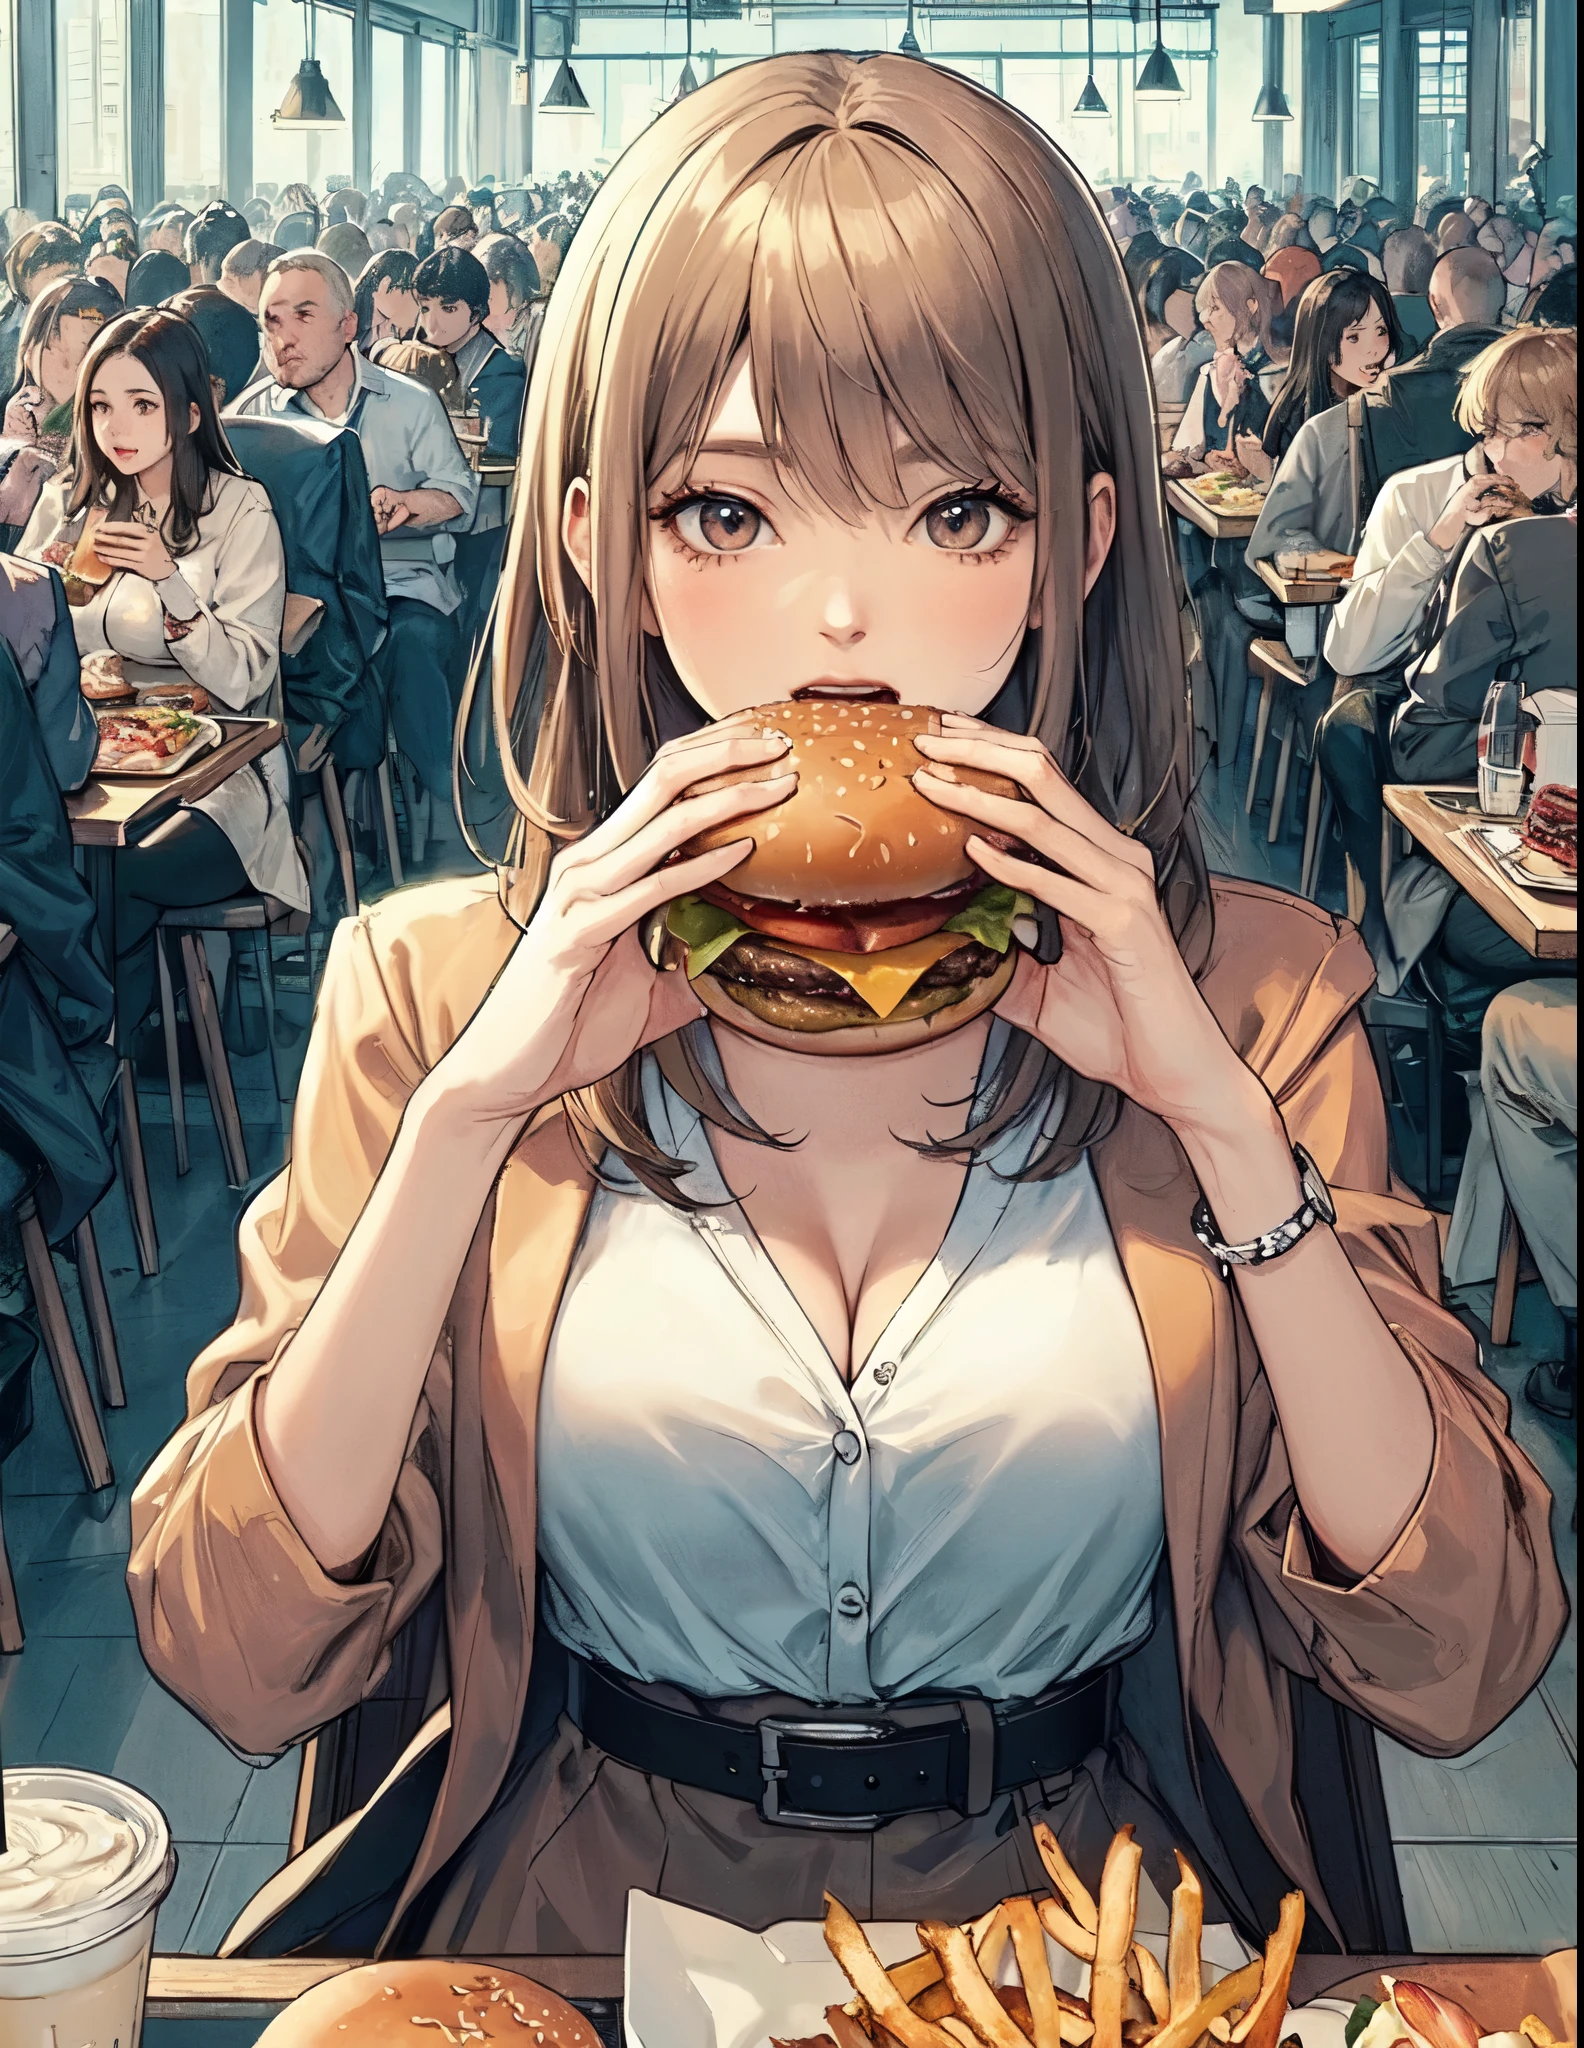 سيدة واحدة فقط, الجلوس على الطاولة, (عقد همبرغر) في كلتا يديه, taking a كبير bite, الزي الأنيق, أنثى ناضجة, /(شعر بيج/) الانفجارات, (فتح الفم) كبير, (أسنان:0.8), (تحفة أفضل نوعية:1.2) رسم توضيحي دقيق ومفصل للغاية, large breasts استراحة (كبير hamburger) استراحة (مطعم غير رسمي) في الداخل, الطعام السريع, مزدحم, خلفية مفصلة